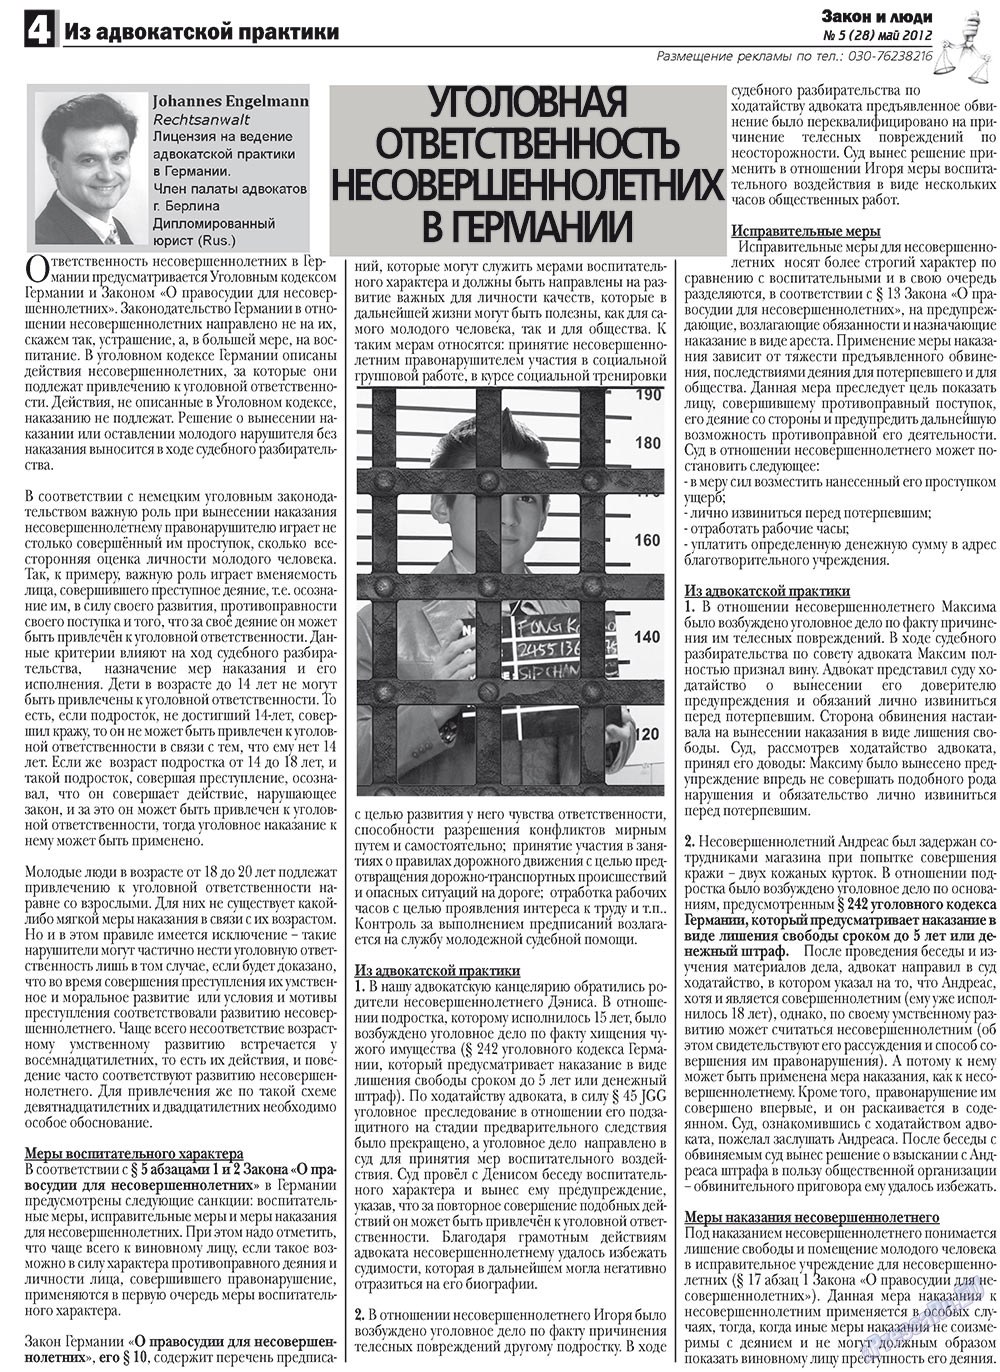 Закон и люди, газета. 2012 №5 стр.4